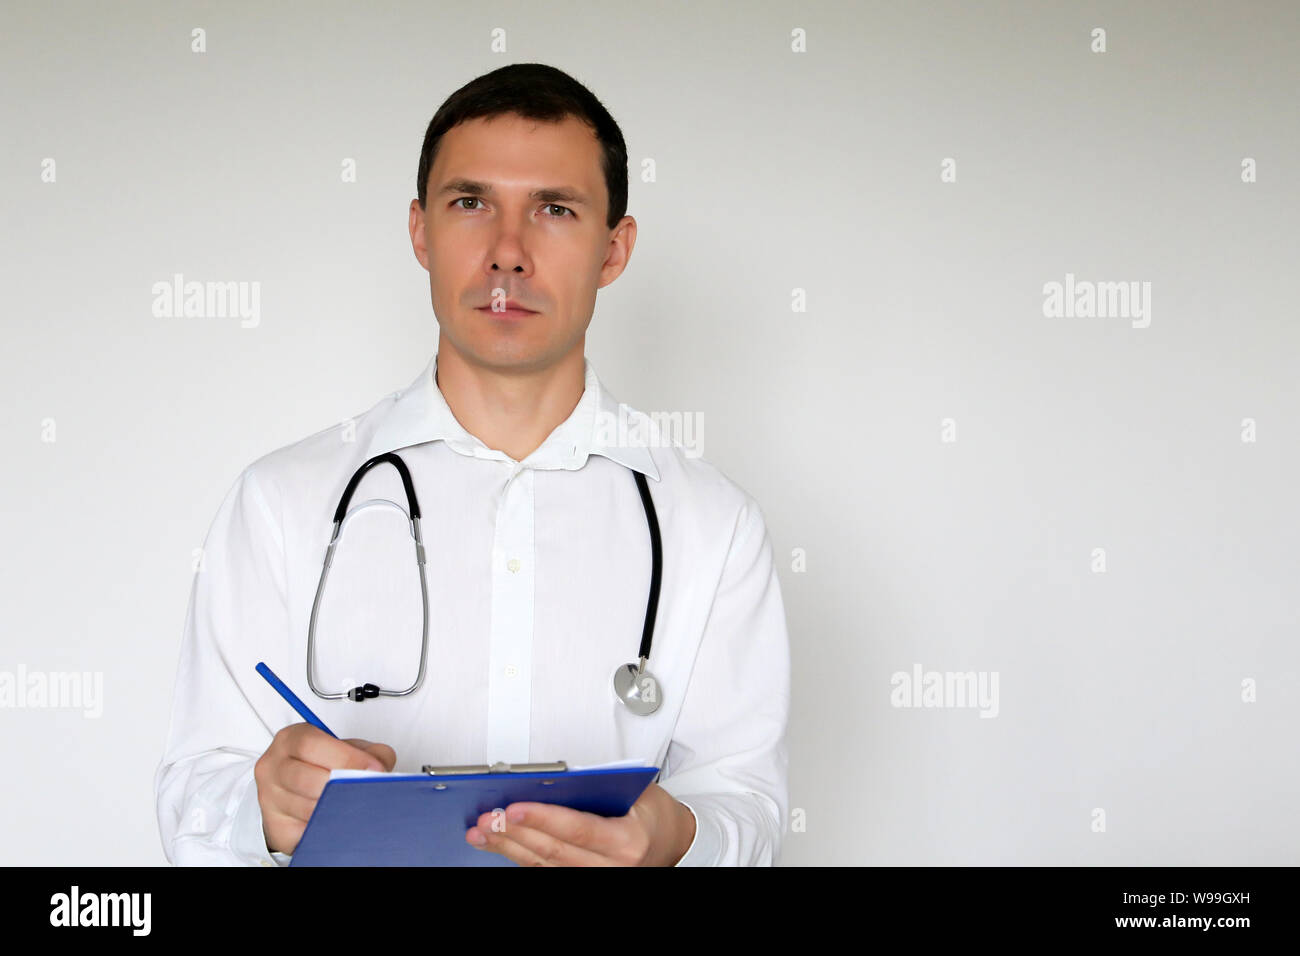 Medico con stetoscopio scrive una prescrizione in piedi su sfondo bianco. Ritratto di un medico di sesso maschile, il concetto di medicina, terapeuta, esame Foto Stock